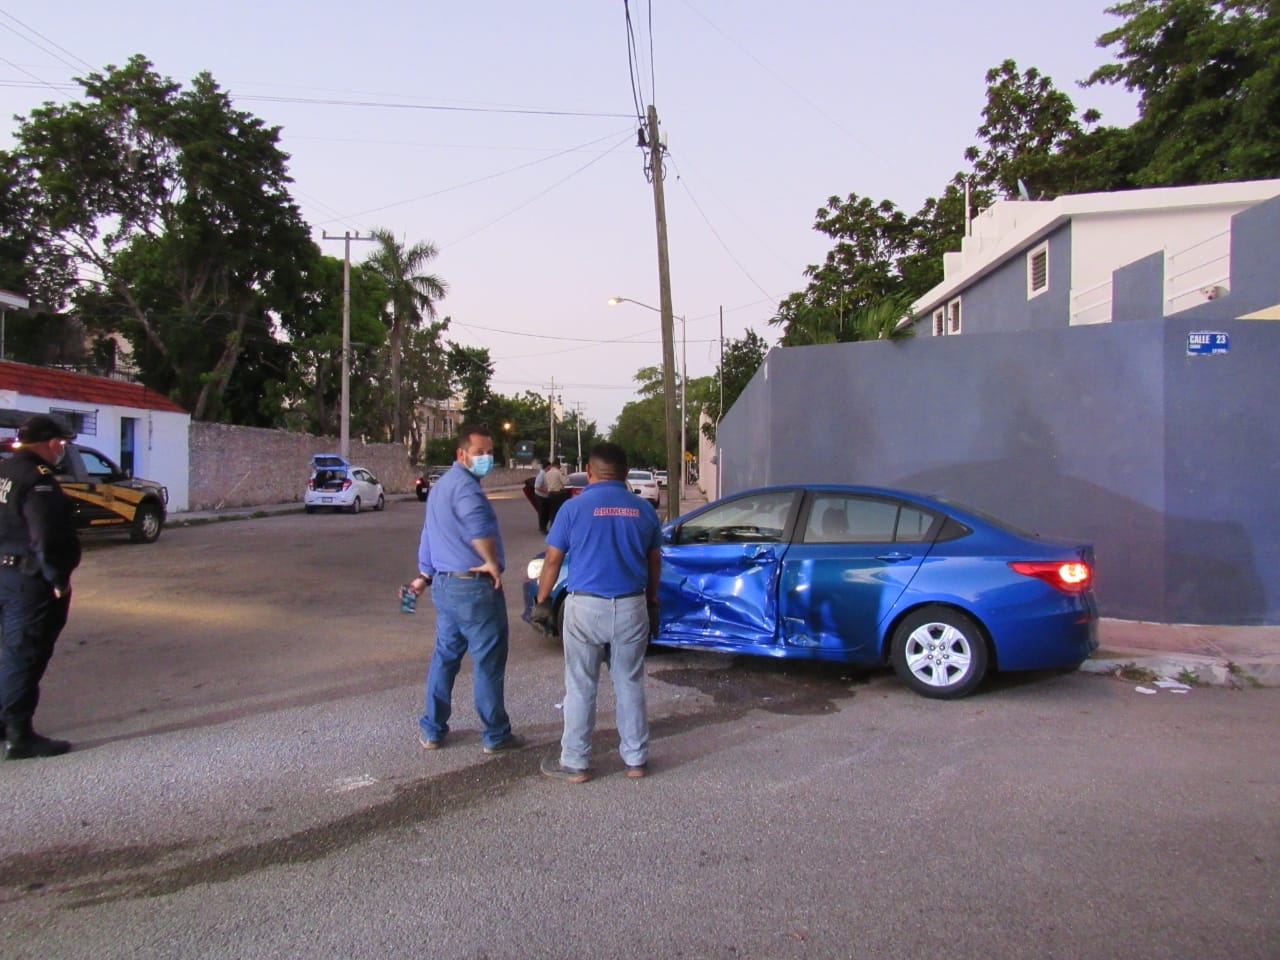 Chevy golpea a camioneta y provoca otro accidente en Mérida